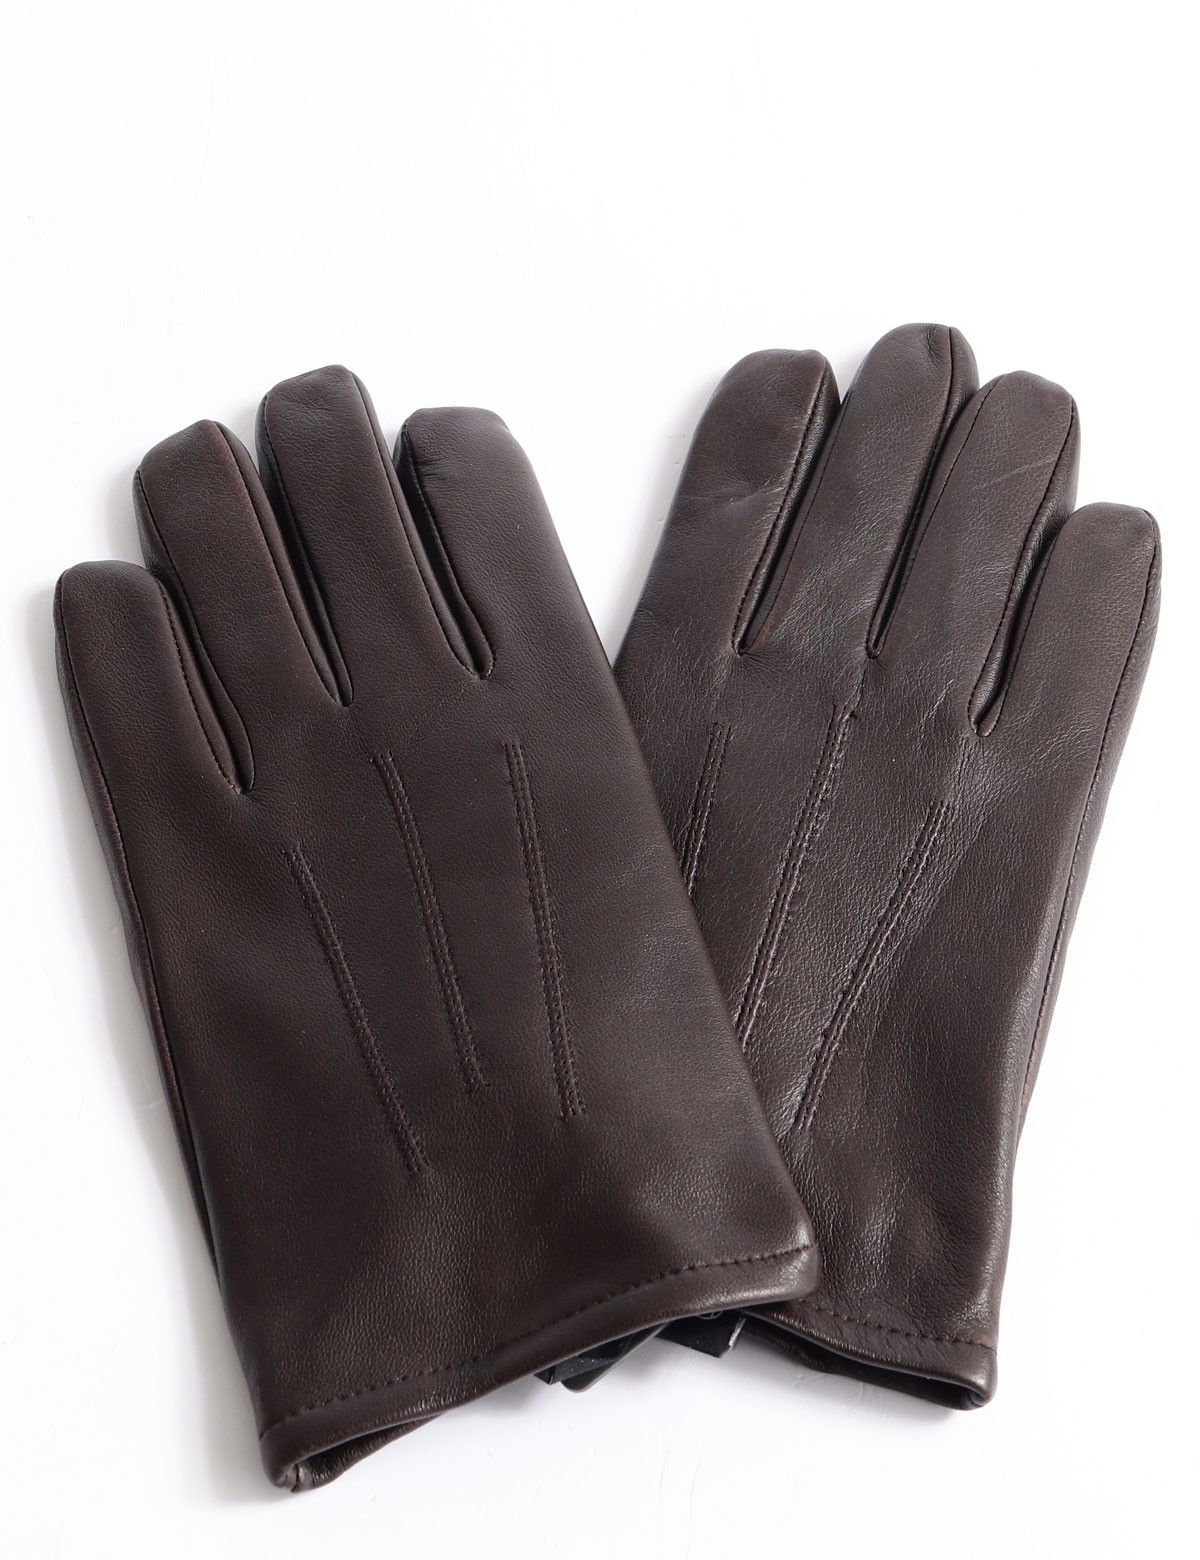 Kessler Liam touch gloves | Scalia Group